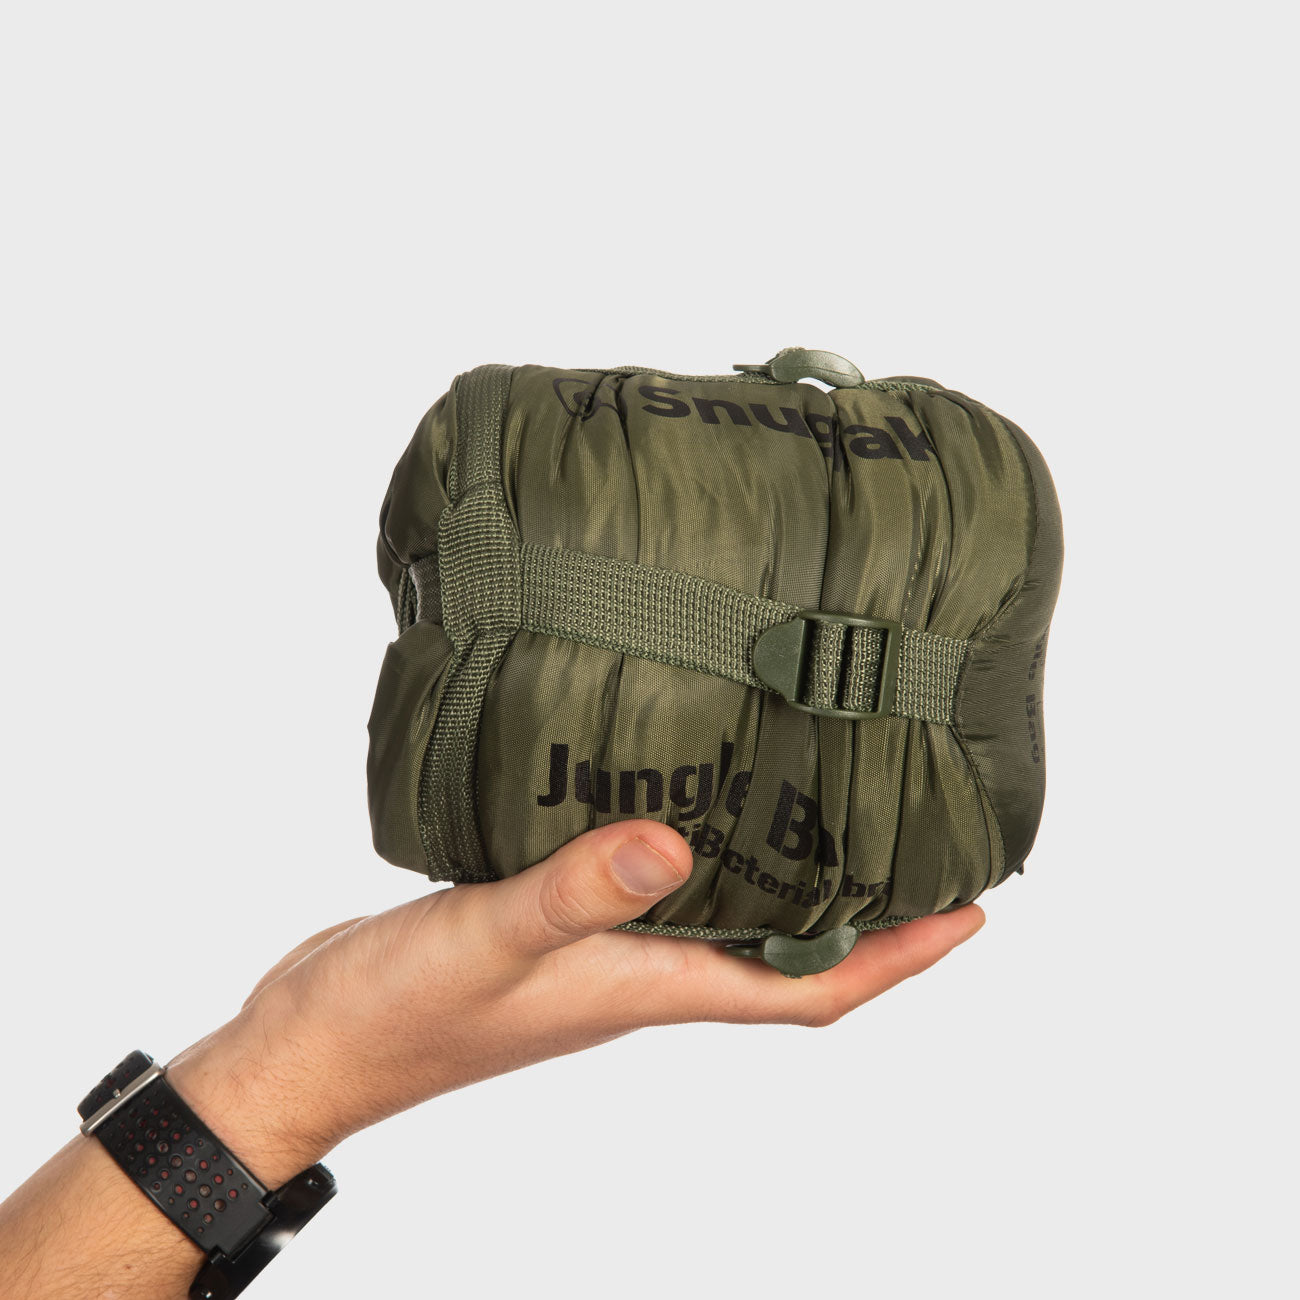 Jungle Bag